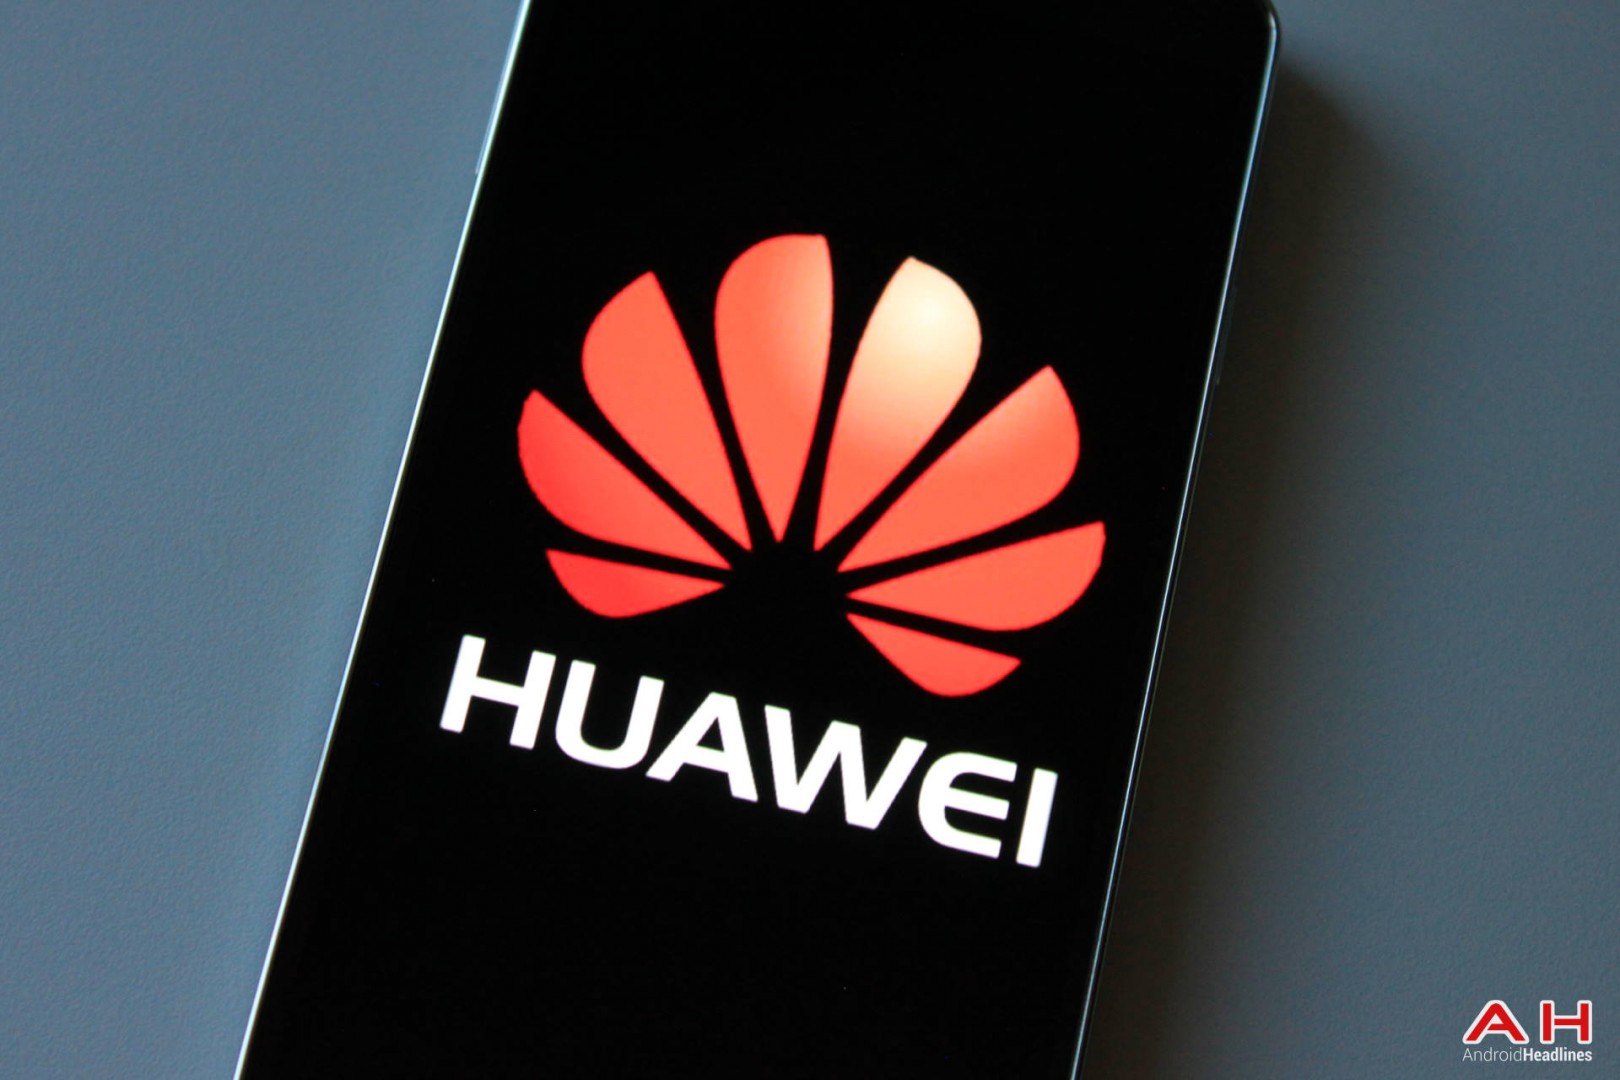 ยังแรง! Huawei เบียด Microsoft ขึ้นรั้งตำแหน่งสมาร์ทโฟนเบอร์ 3 ของโลกรองจาก Samsung-Apple